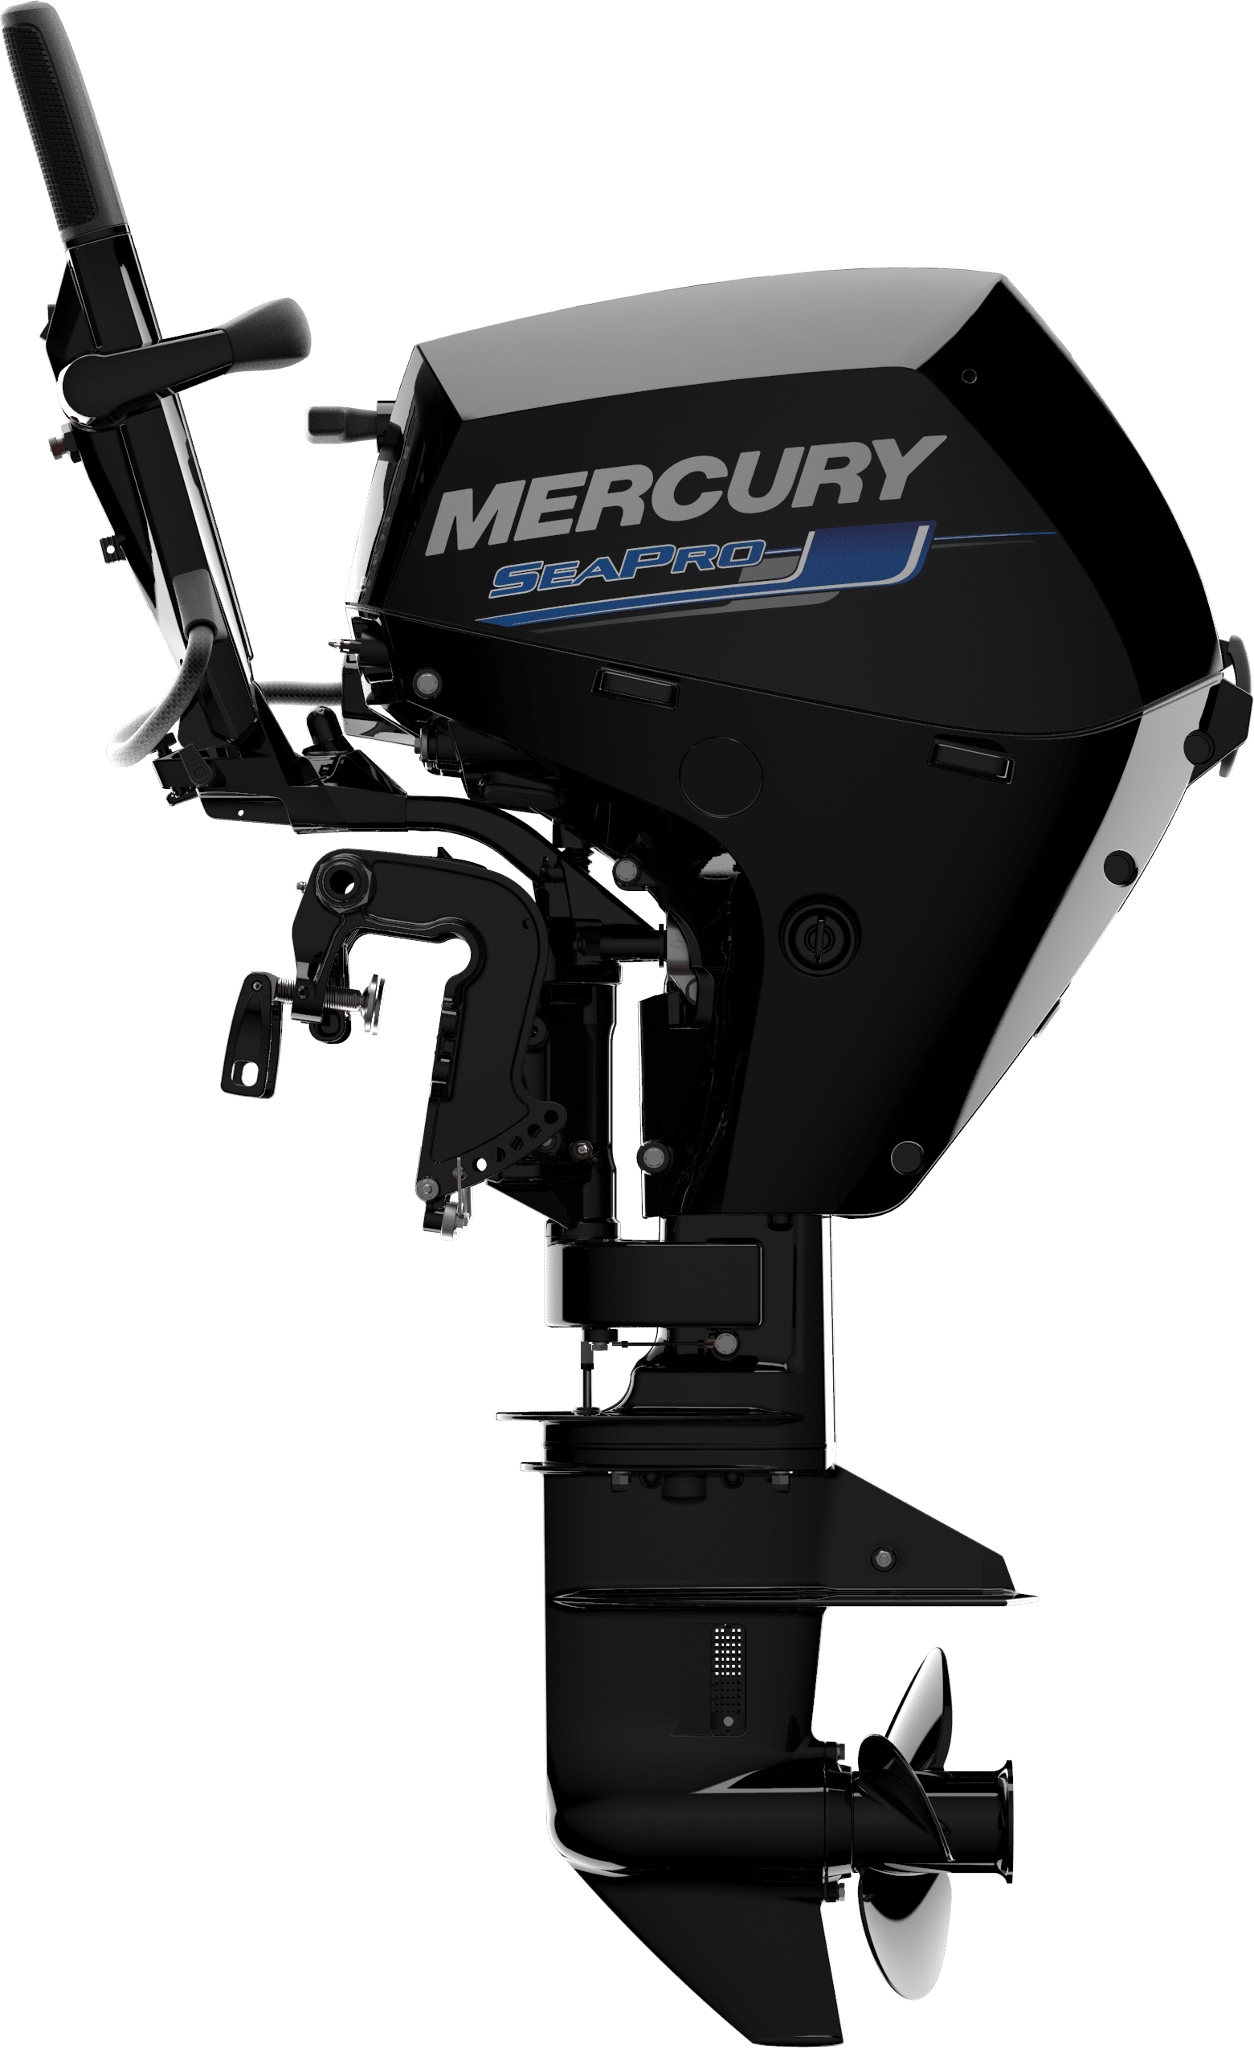 Mercury Seapro 15hp outboard